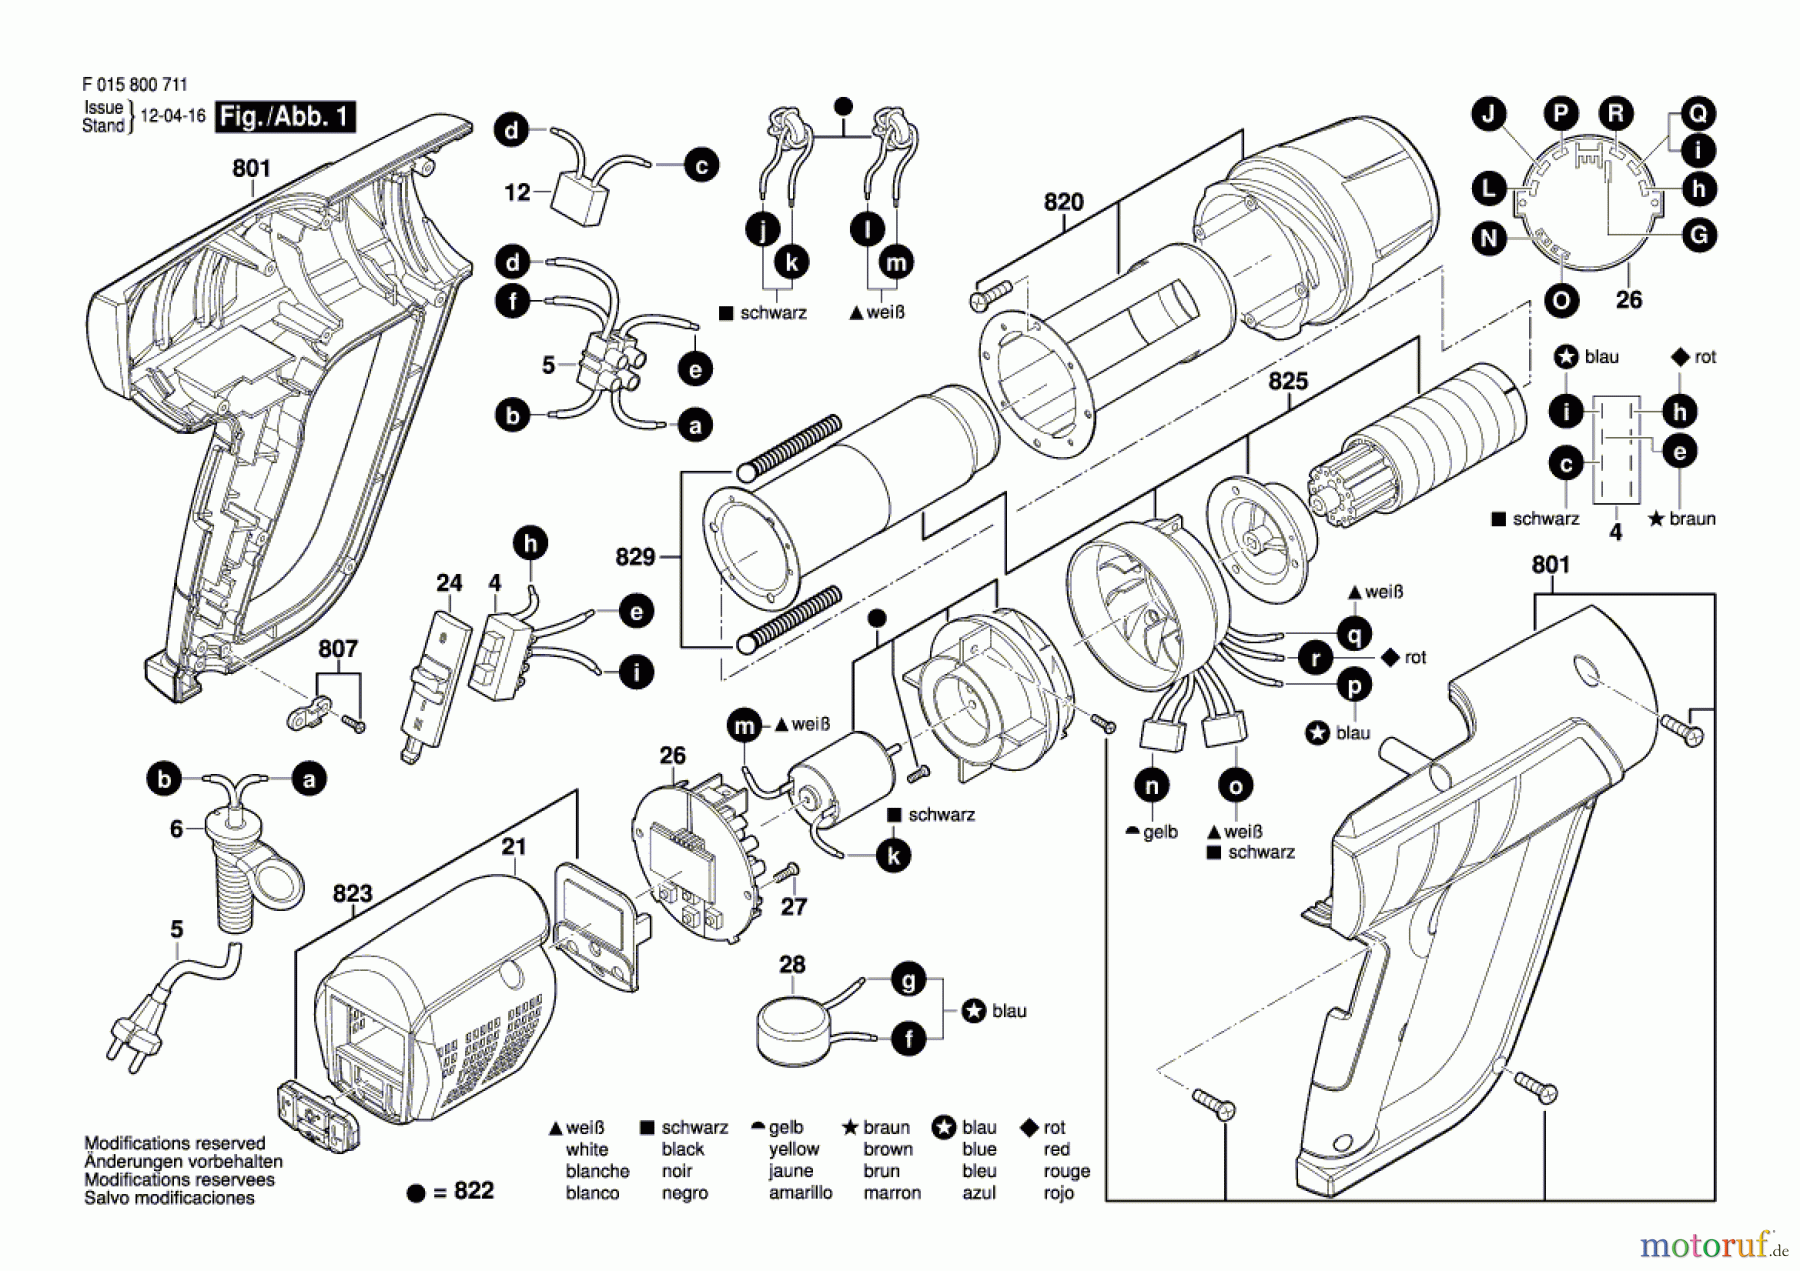  Bosch Werkzeug Heissluftgebläse 8007 Seite 1